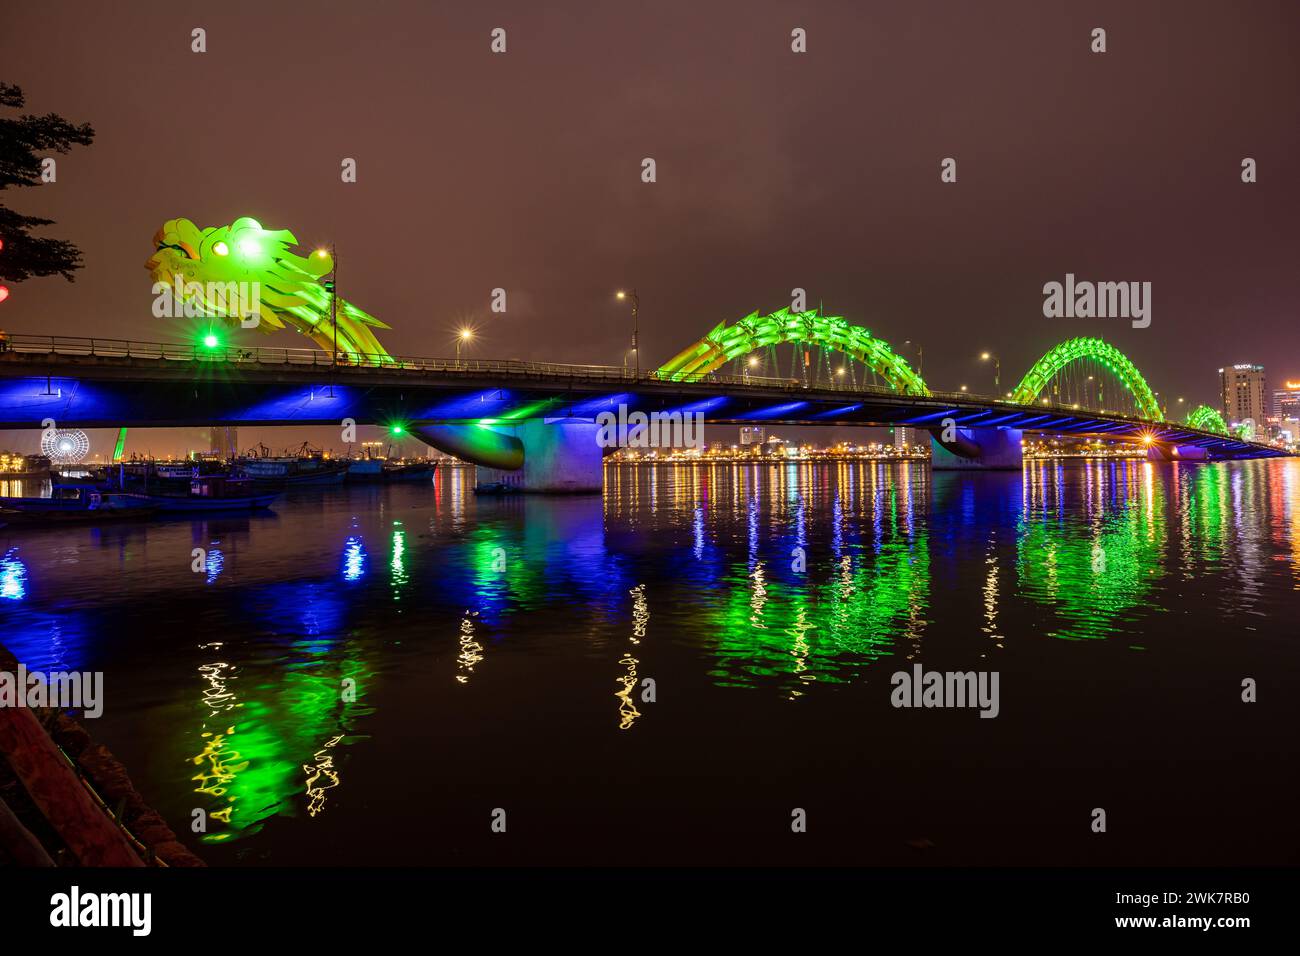 The Dragon bridge of Da Nang in Vietnam Stock Photo